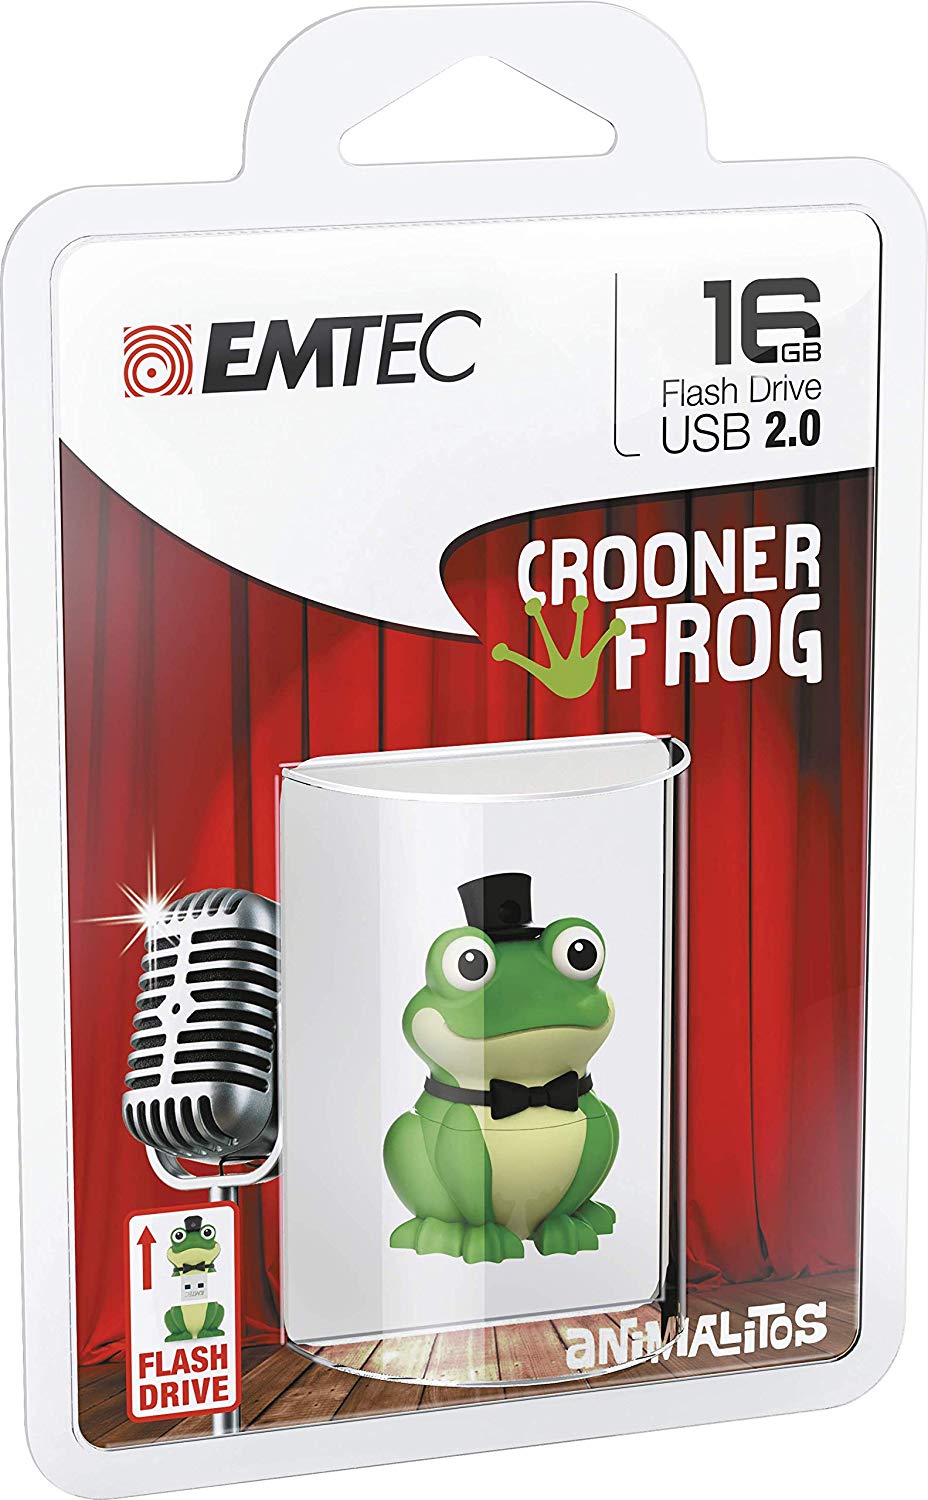 Memoria Emtec Usb2 0 M339 16gb Crooner Frog Ecmmd16gm339 3126170166814